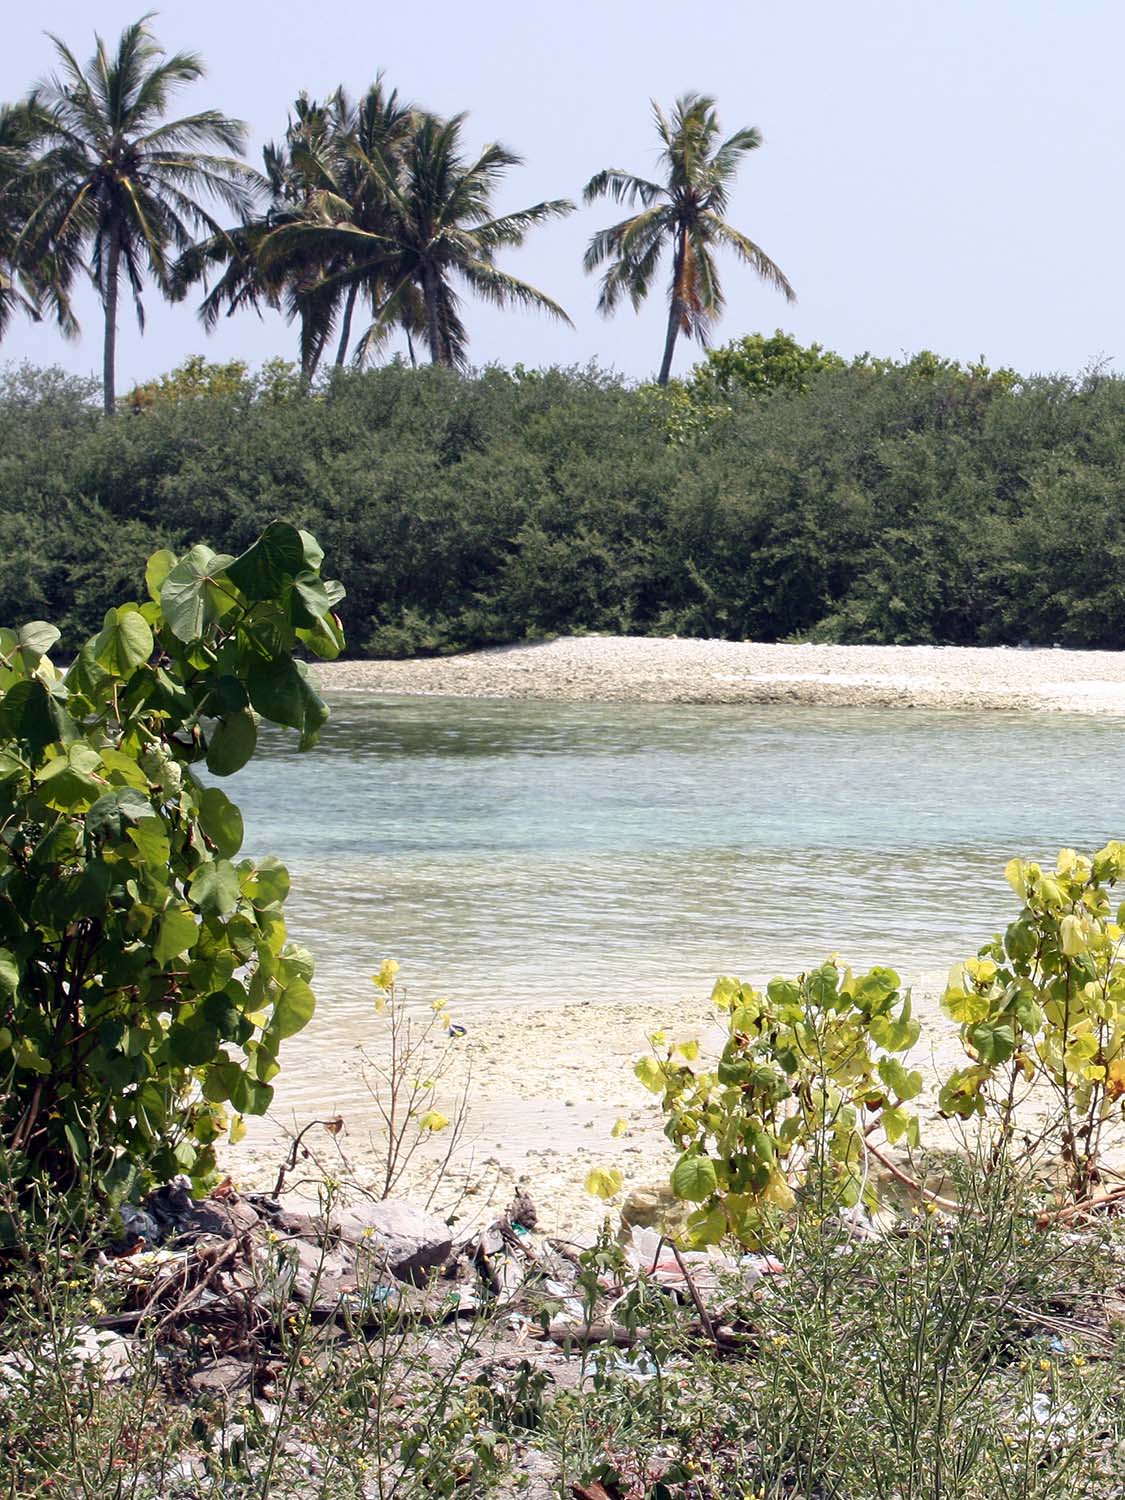 Maldives, a small island developing state.